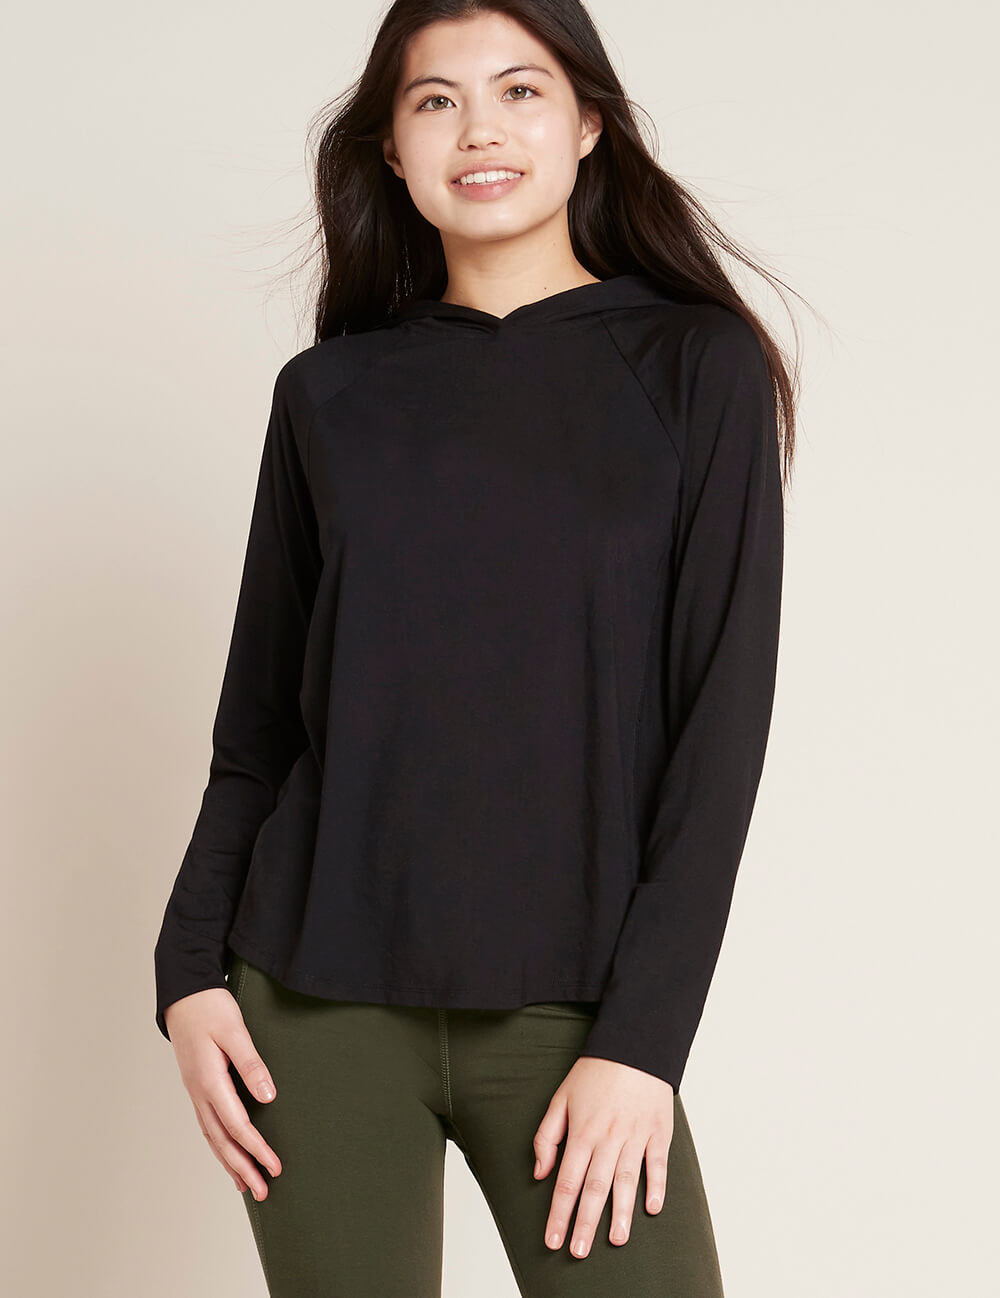 Women_s-Long-Sleeve-hodded-T-Shirt-Black-Front.jpg